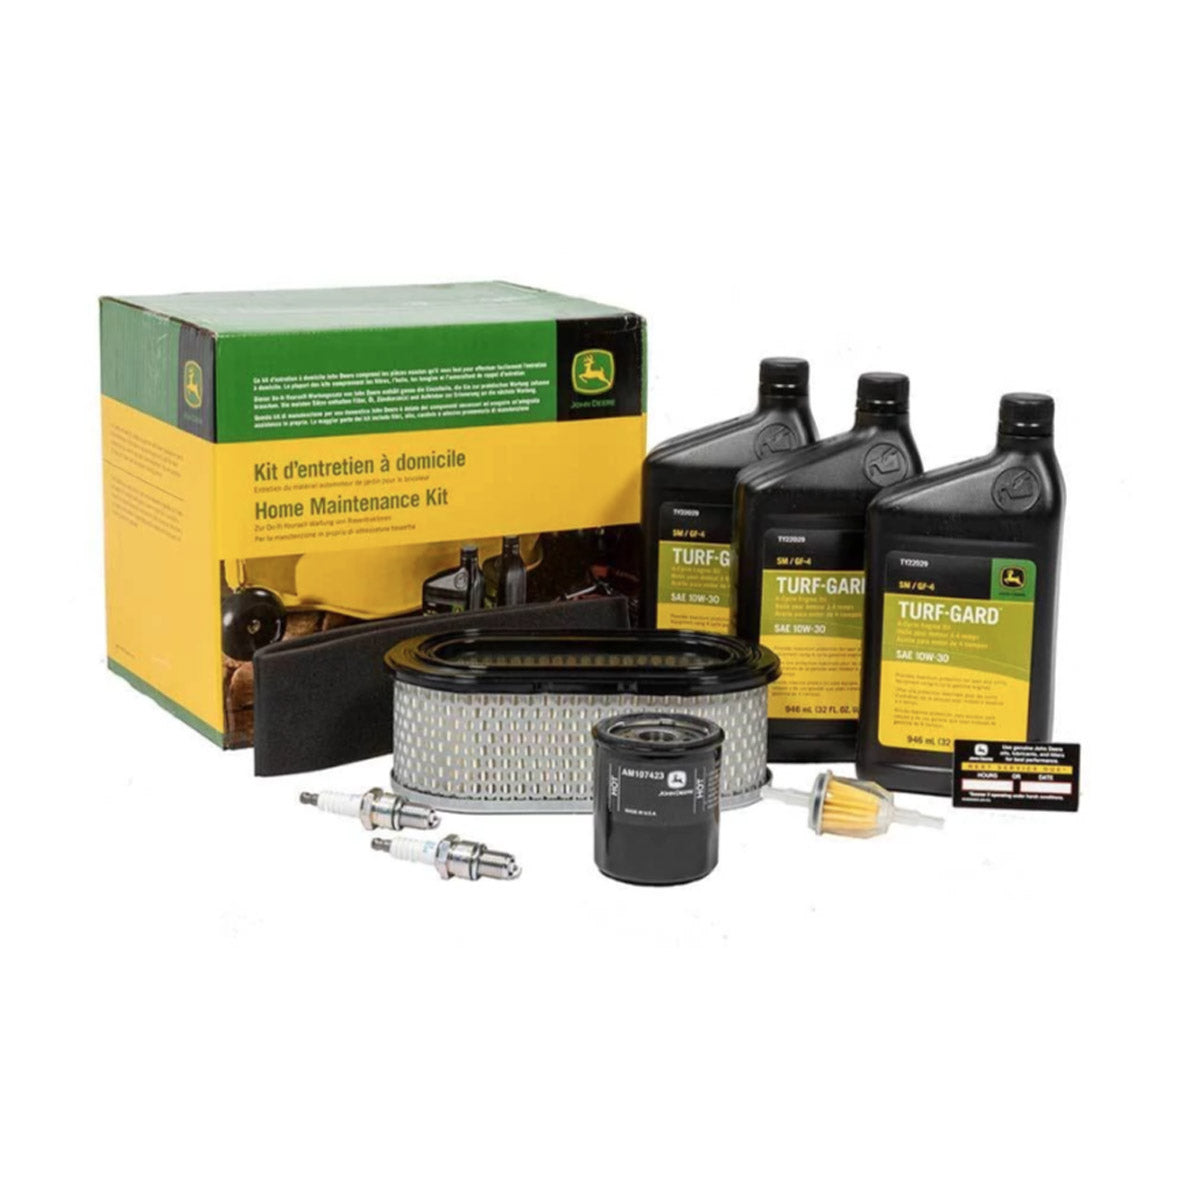 John Deere Home Maintenance Kit for X500 Series - LG257